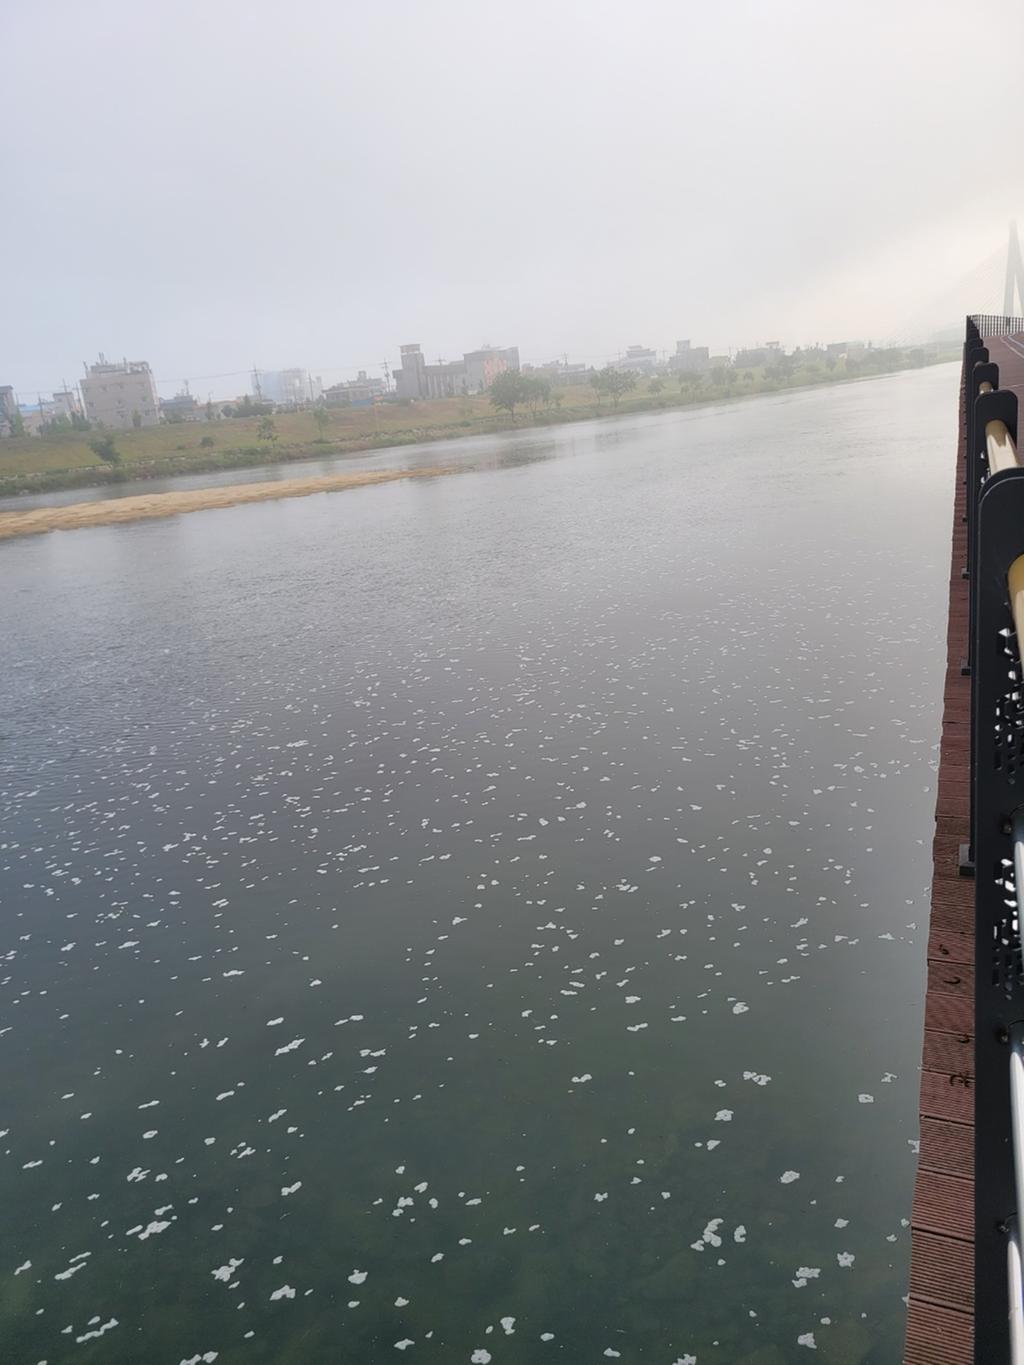 상평교 군부대 근처 자전거코스에서 찍은 사진, 오염거품으로 강전체가 뒤덮어 있음.